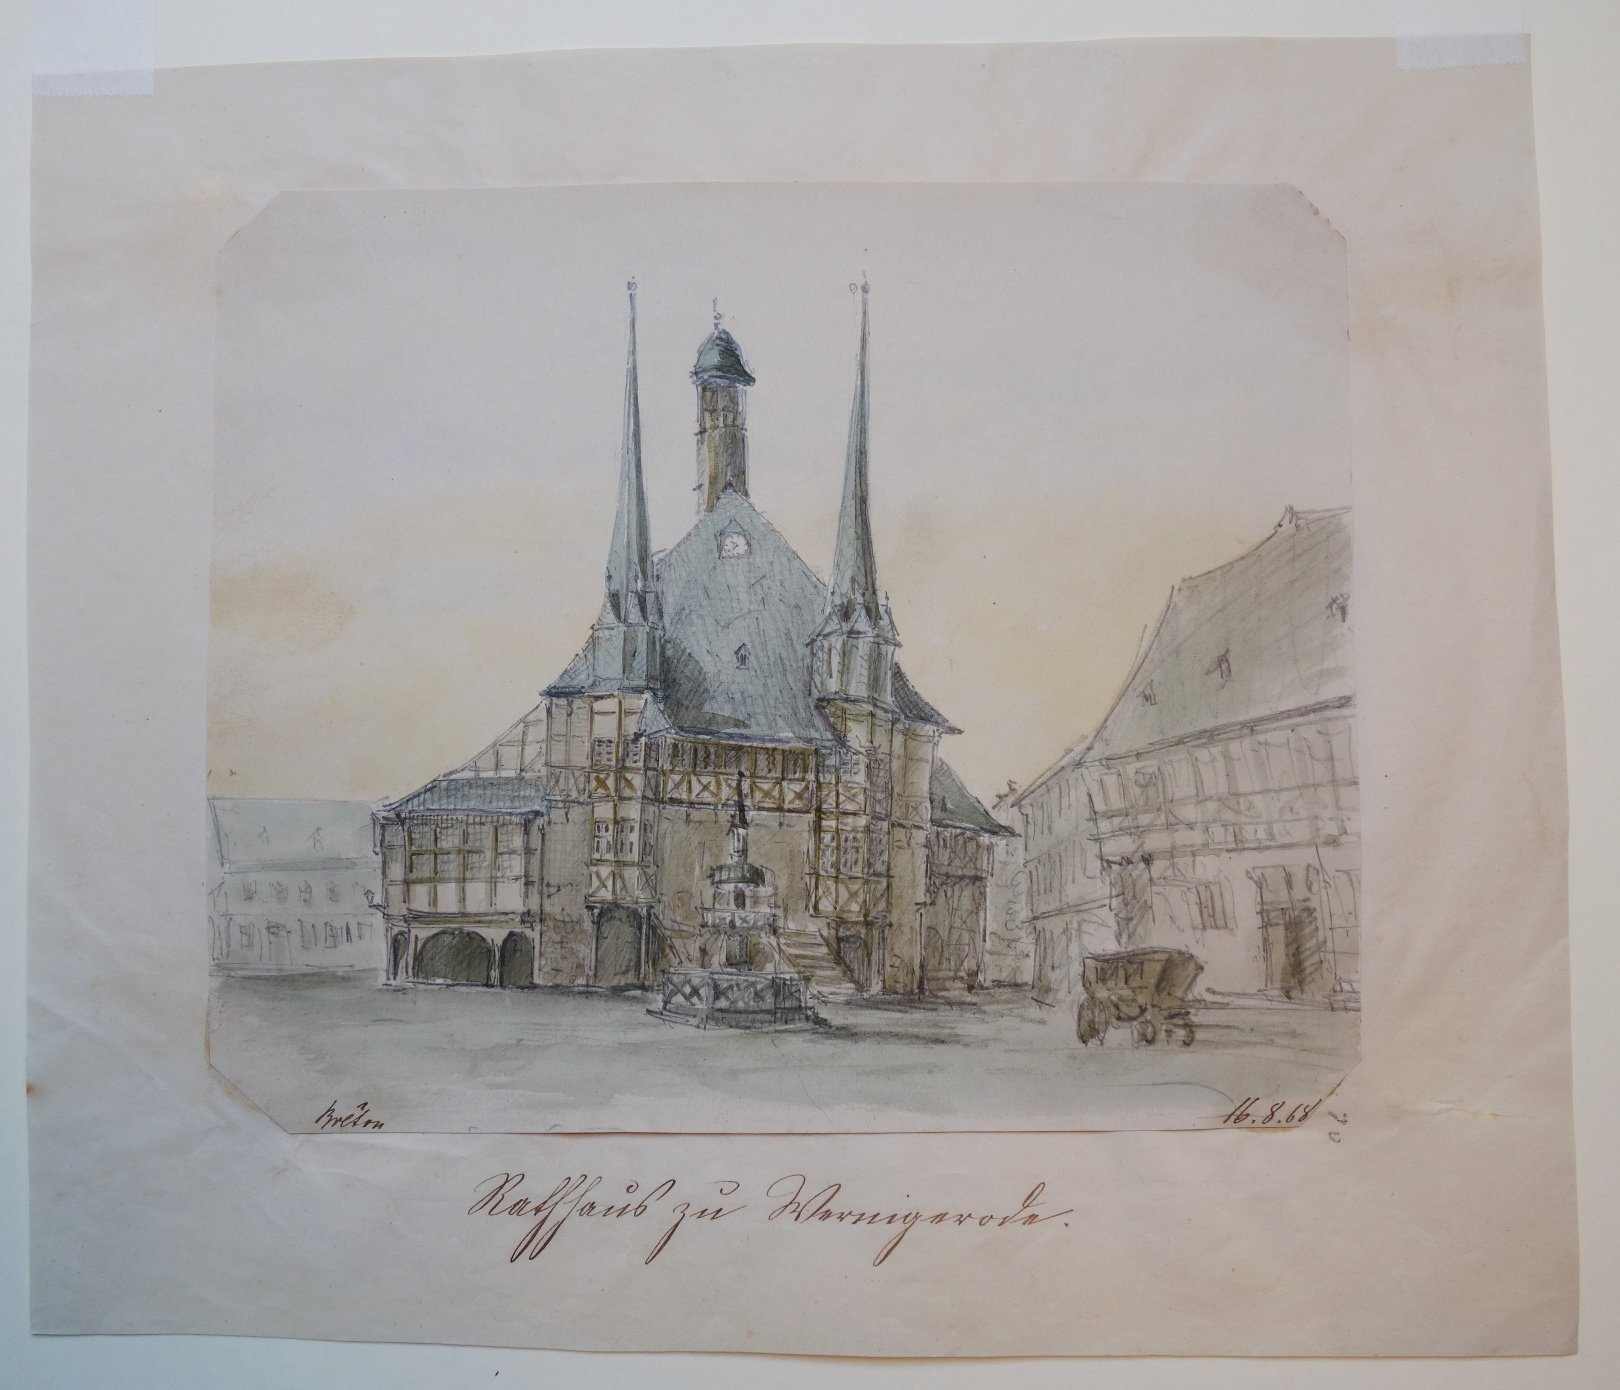 Wernigerode: Marktplatz mit Rathaus, gezeichnet von Breton, 16. August 1868 (Schloß Wernigerode GmbH RR-F)